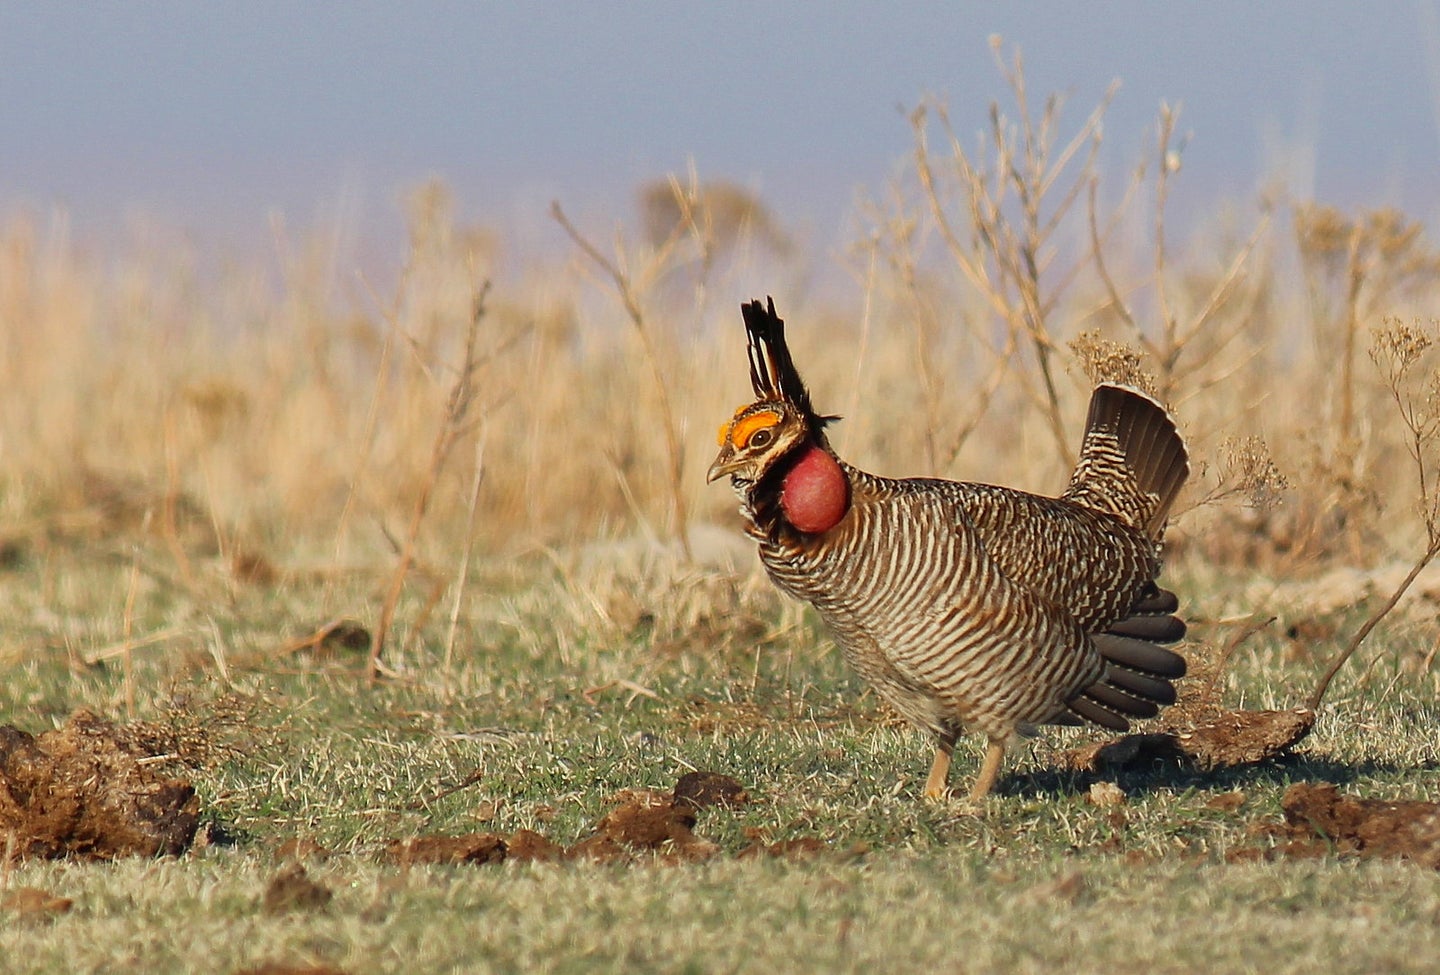 A lesser prairie-chicken walking in the grass.